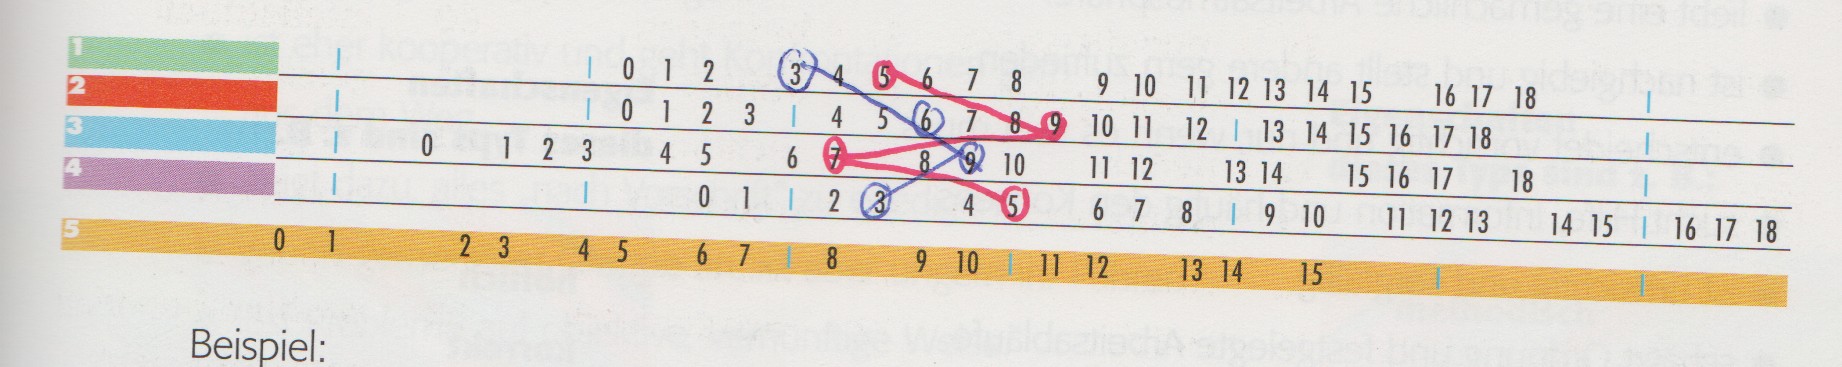 Persönlichkeitstest-Grafik: Die blaue Linie zeigt ein um 30 Grad nach links gekipptes L, die rote ein Z